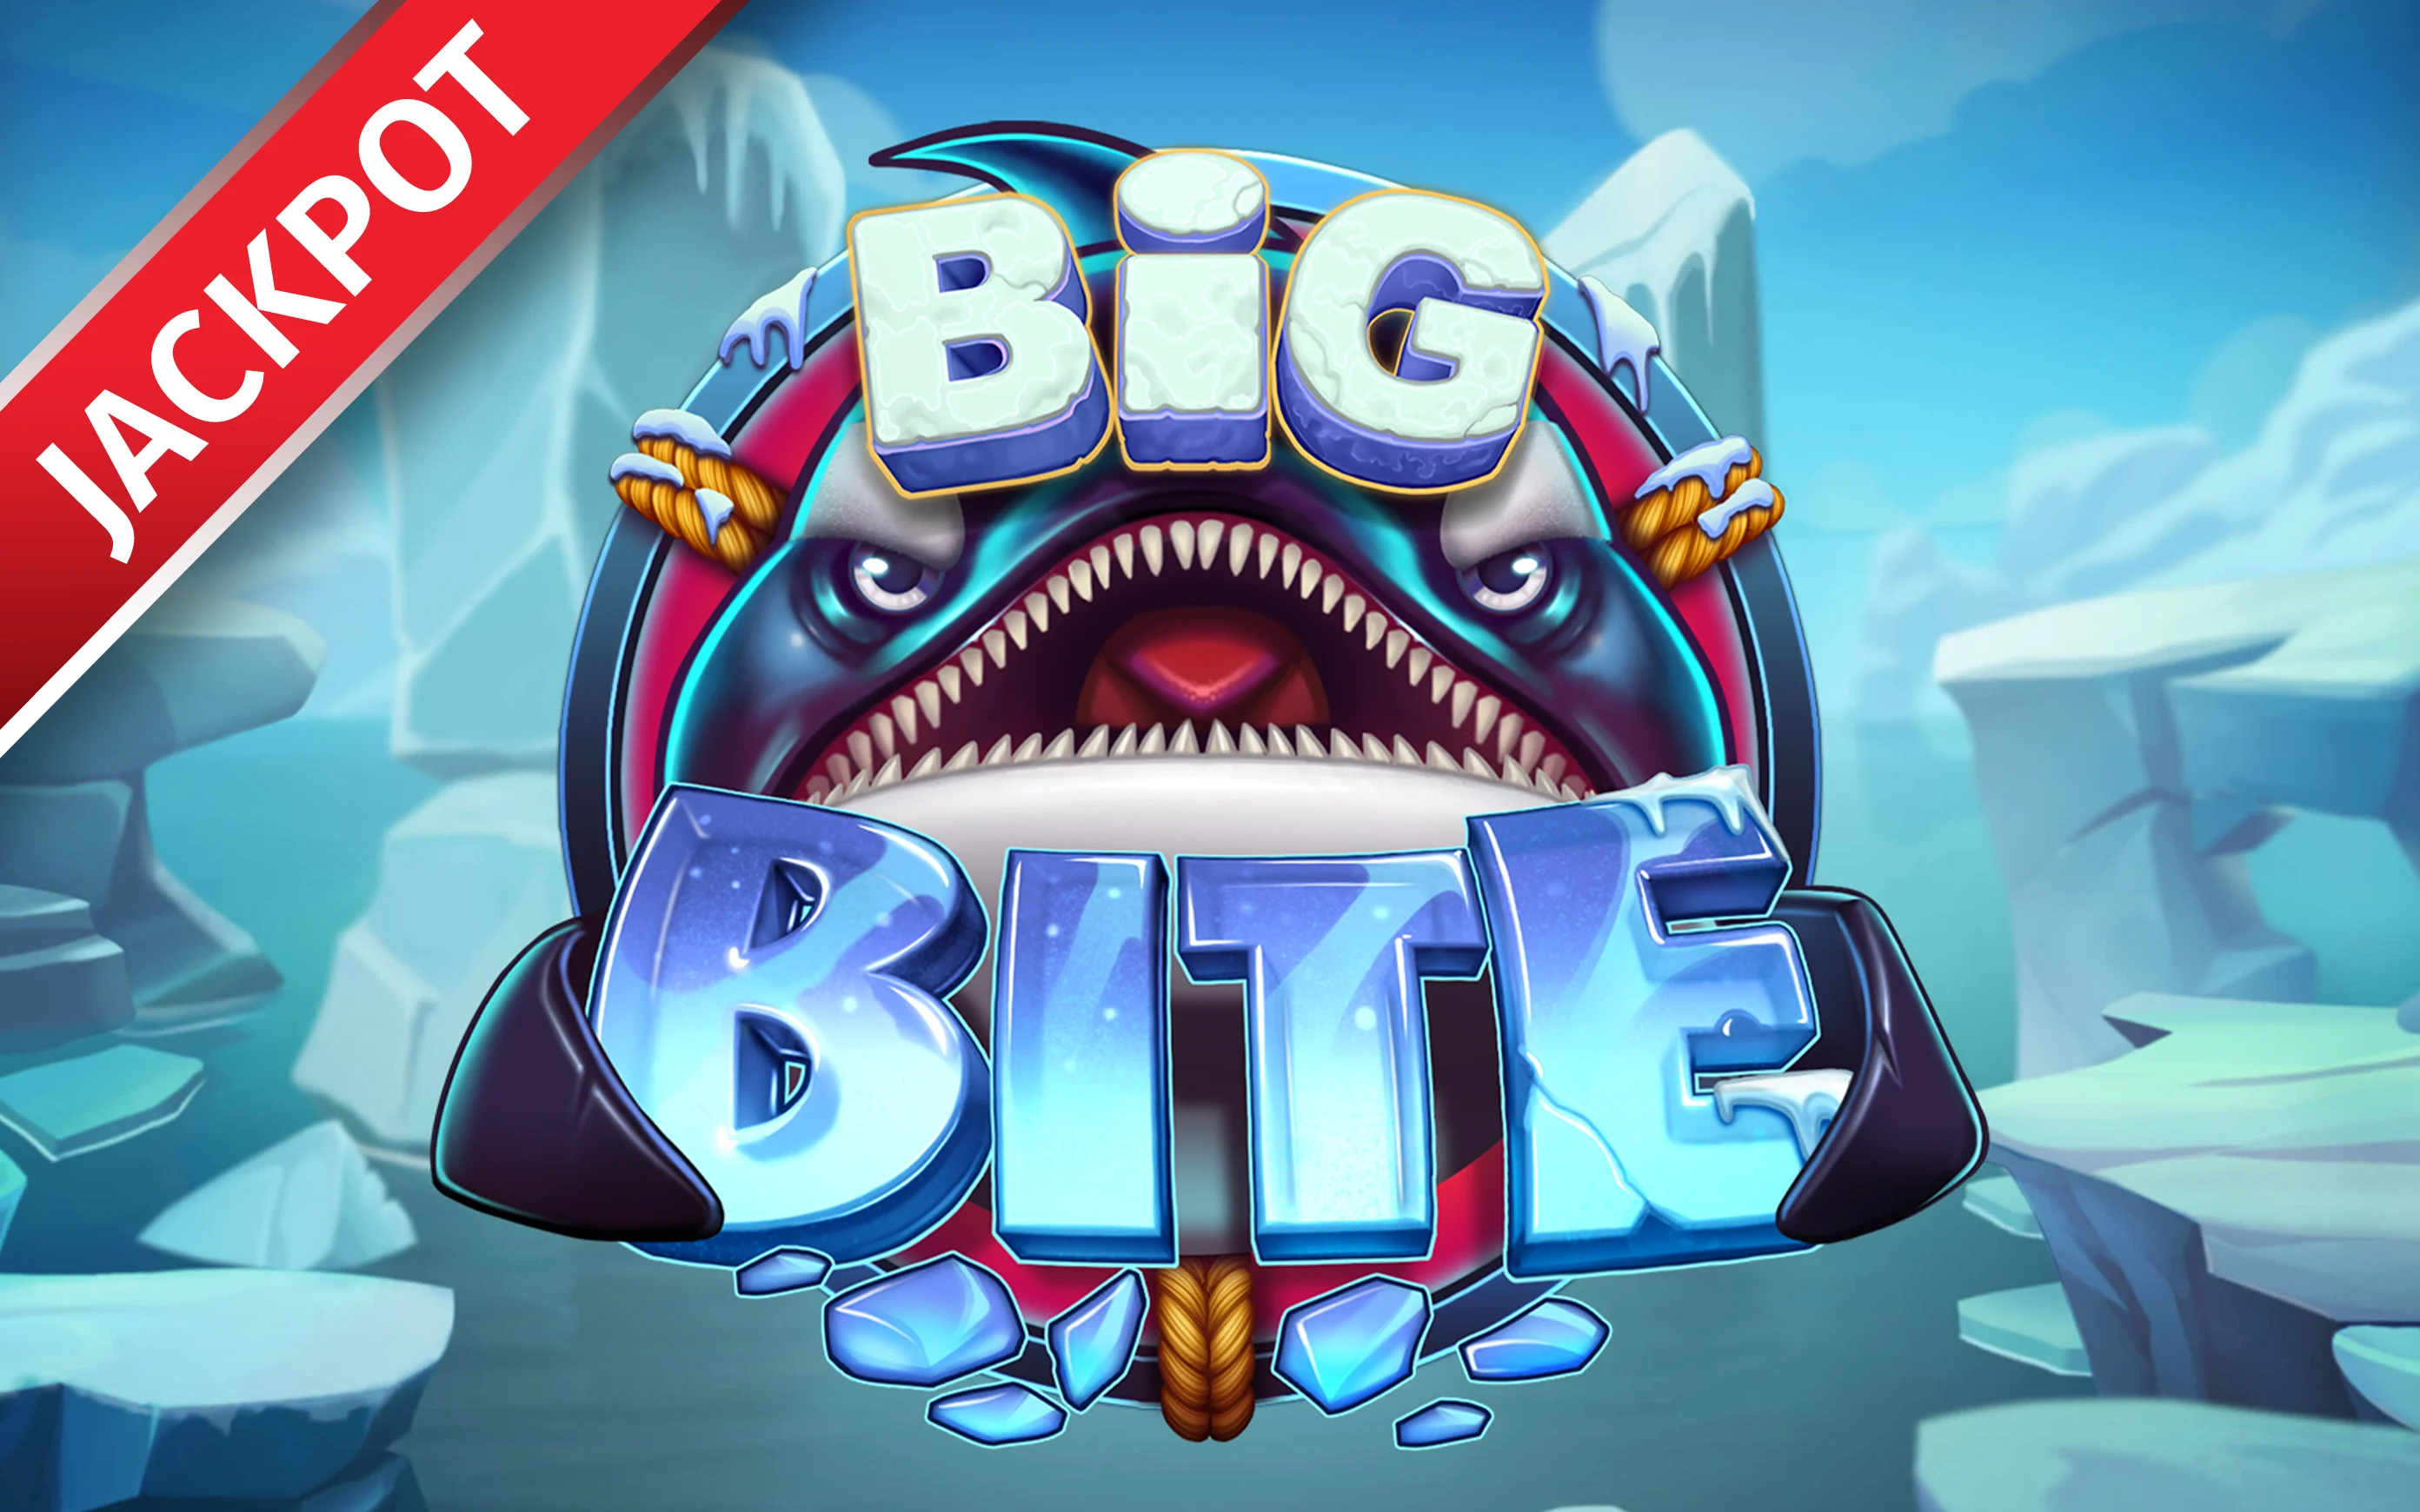 Jouer à Big Bite sur le casino en ligne Starcasino.be